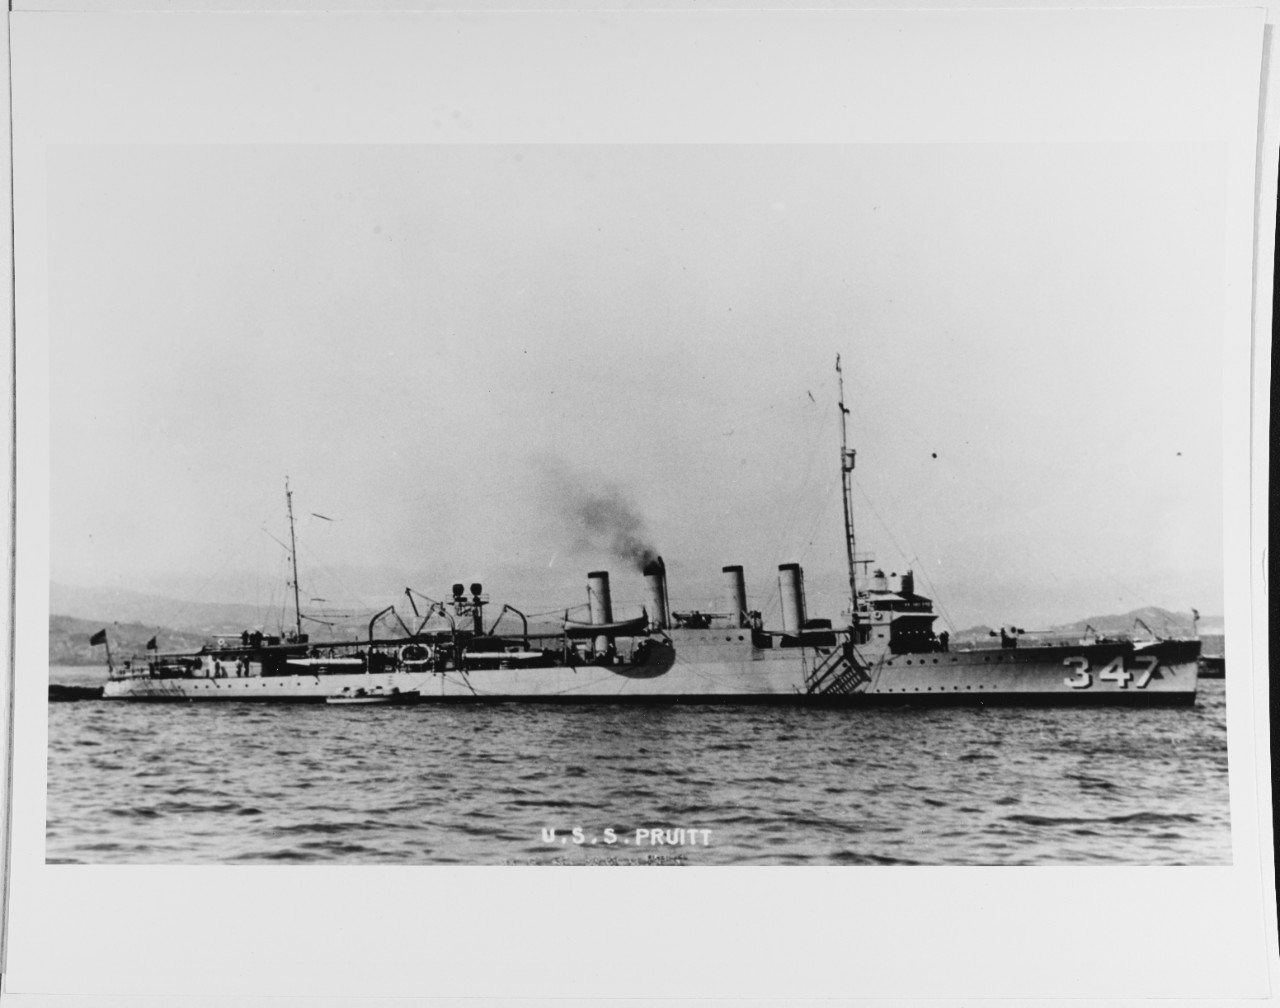 USS PRUITT (DD-347).